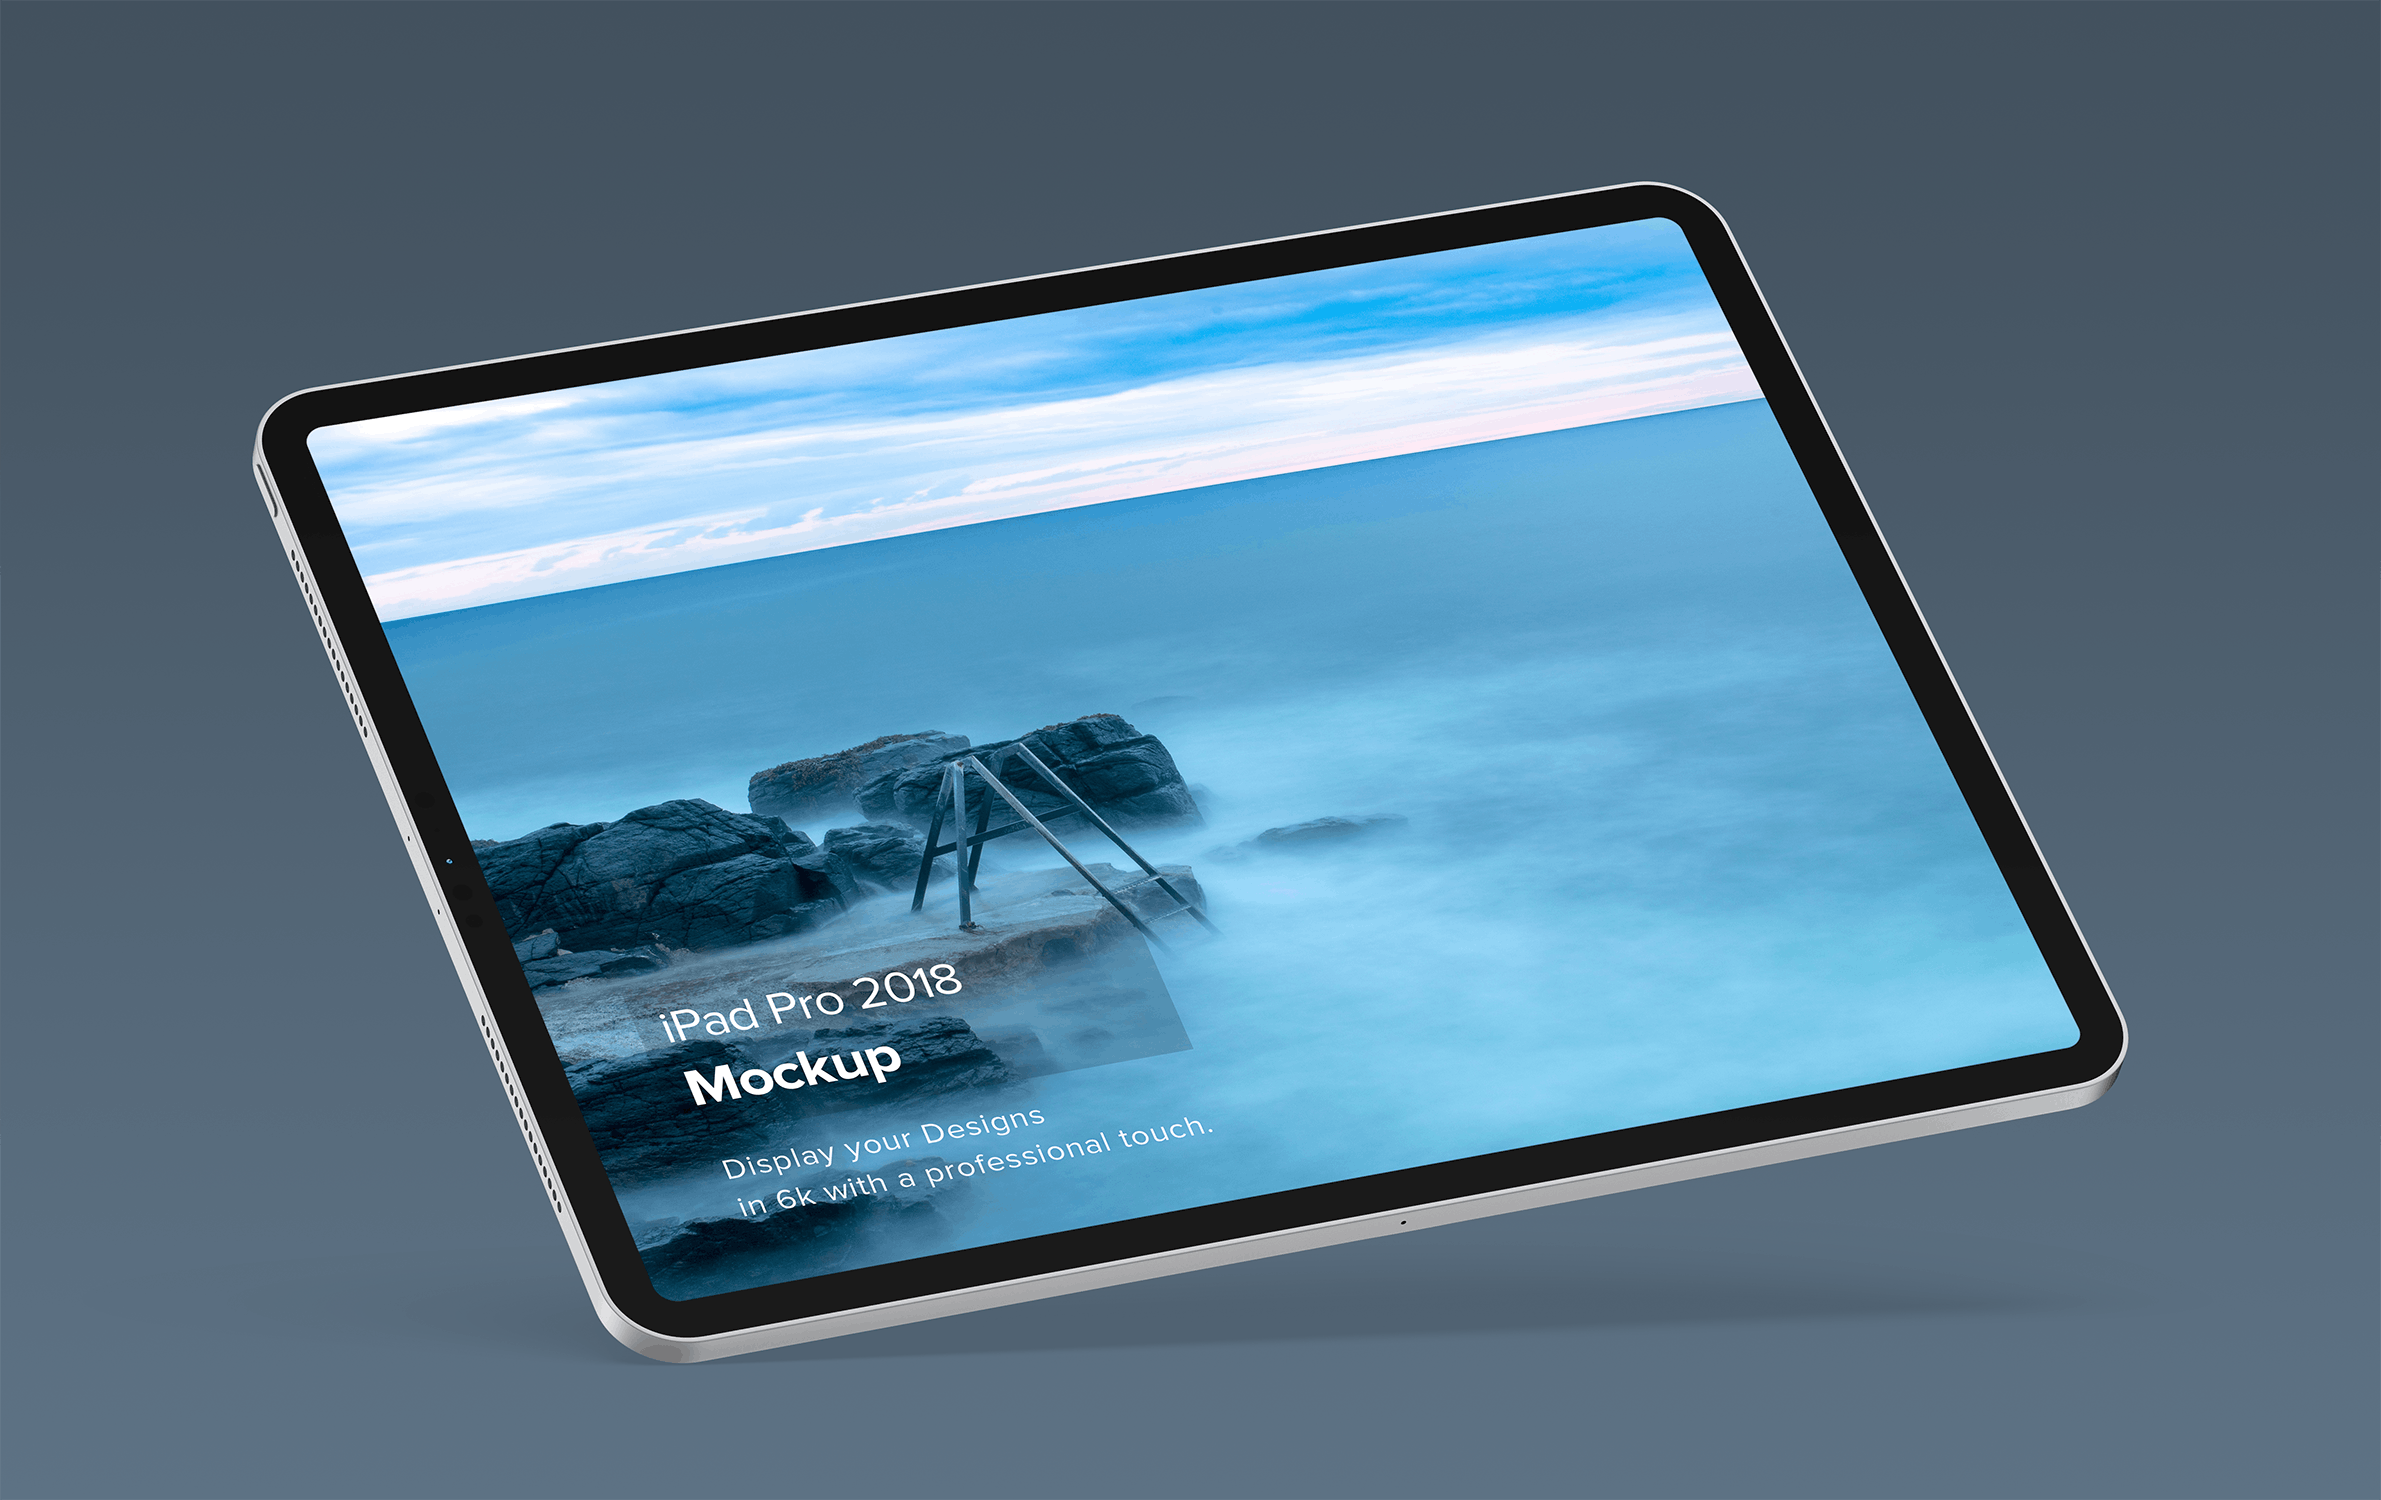 iPad Pro专业平板电脑设计演示非凡图库精选样机模板套装v2 iPad Mockup 2.0插图(4)